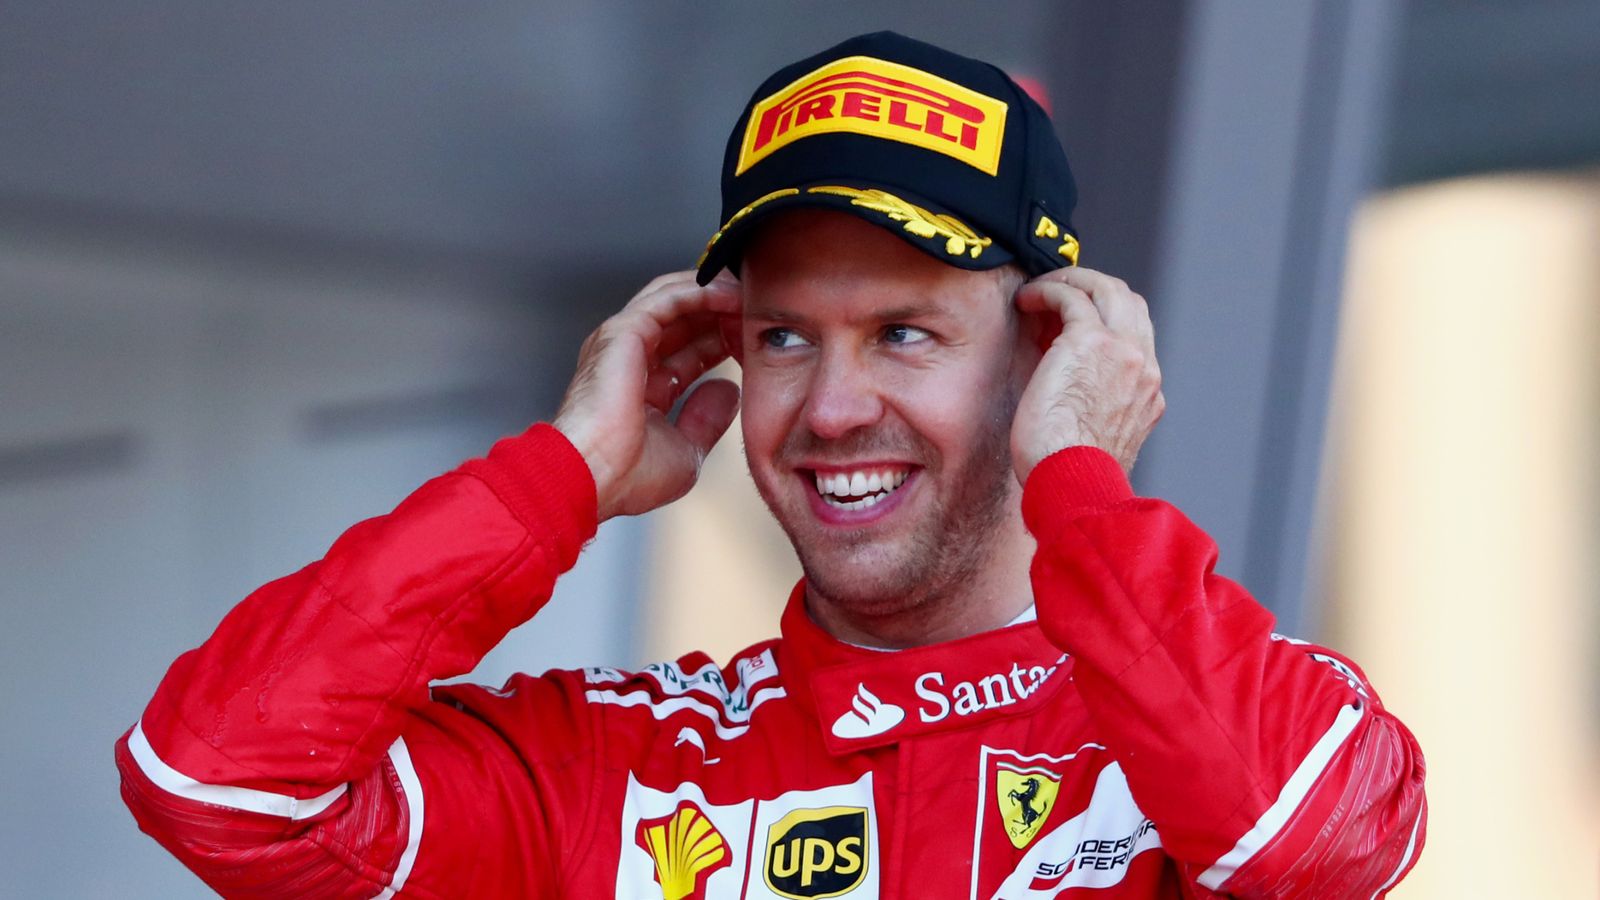 F1: Sebastian Vettel vocal as quiet V6 engines spat 